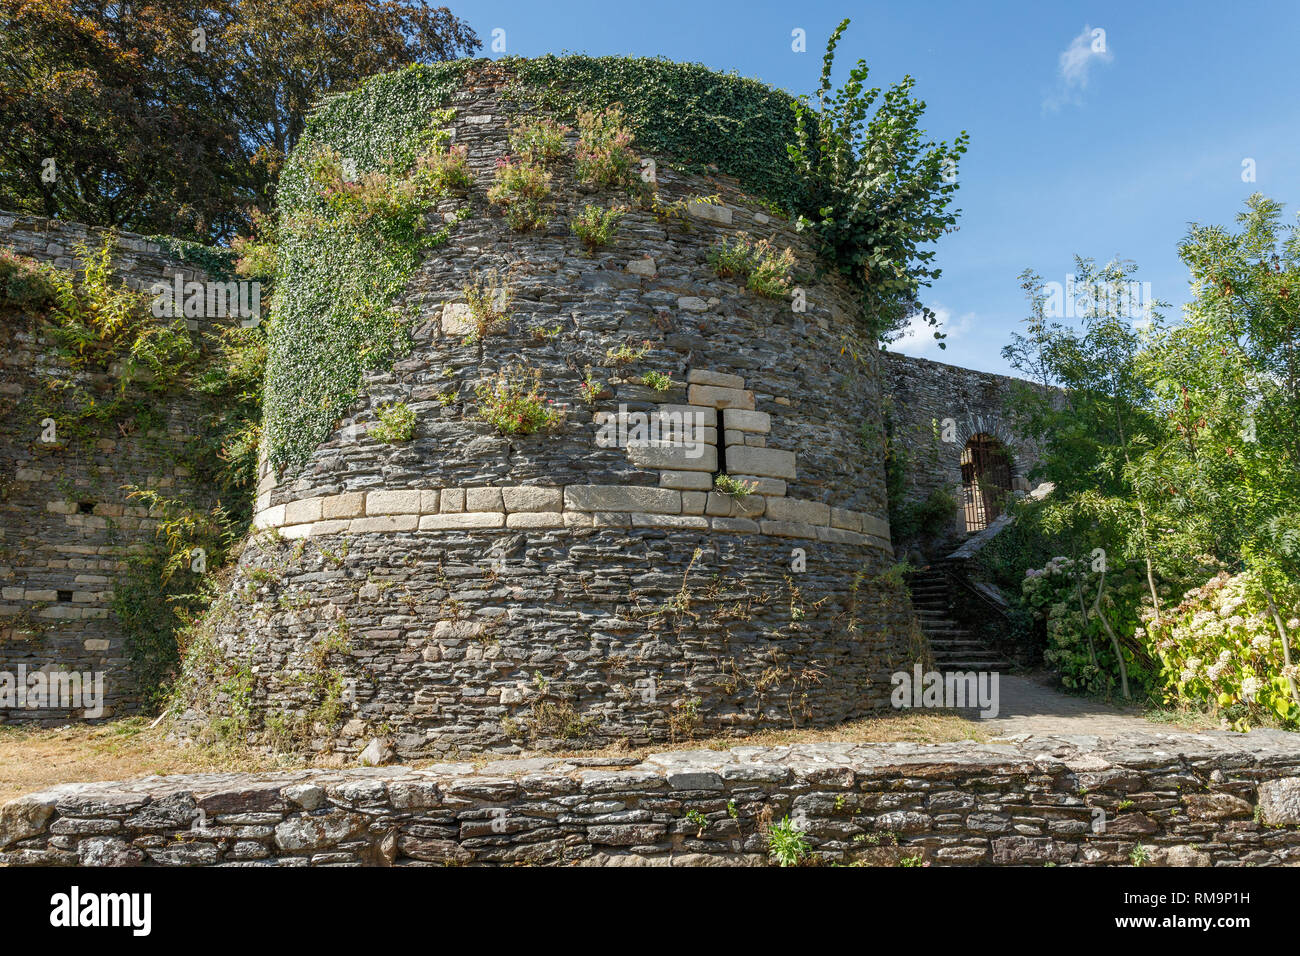 Francia, Morbihan, Rochefort en Terre, etichettati Les Plus Beaux Villages de France (i più bei villaggi di Francia), il castello di fortificazioni, Chemi Foto Stock